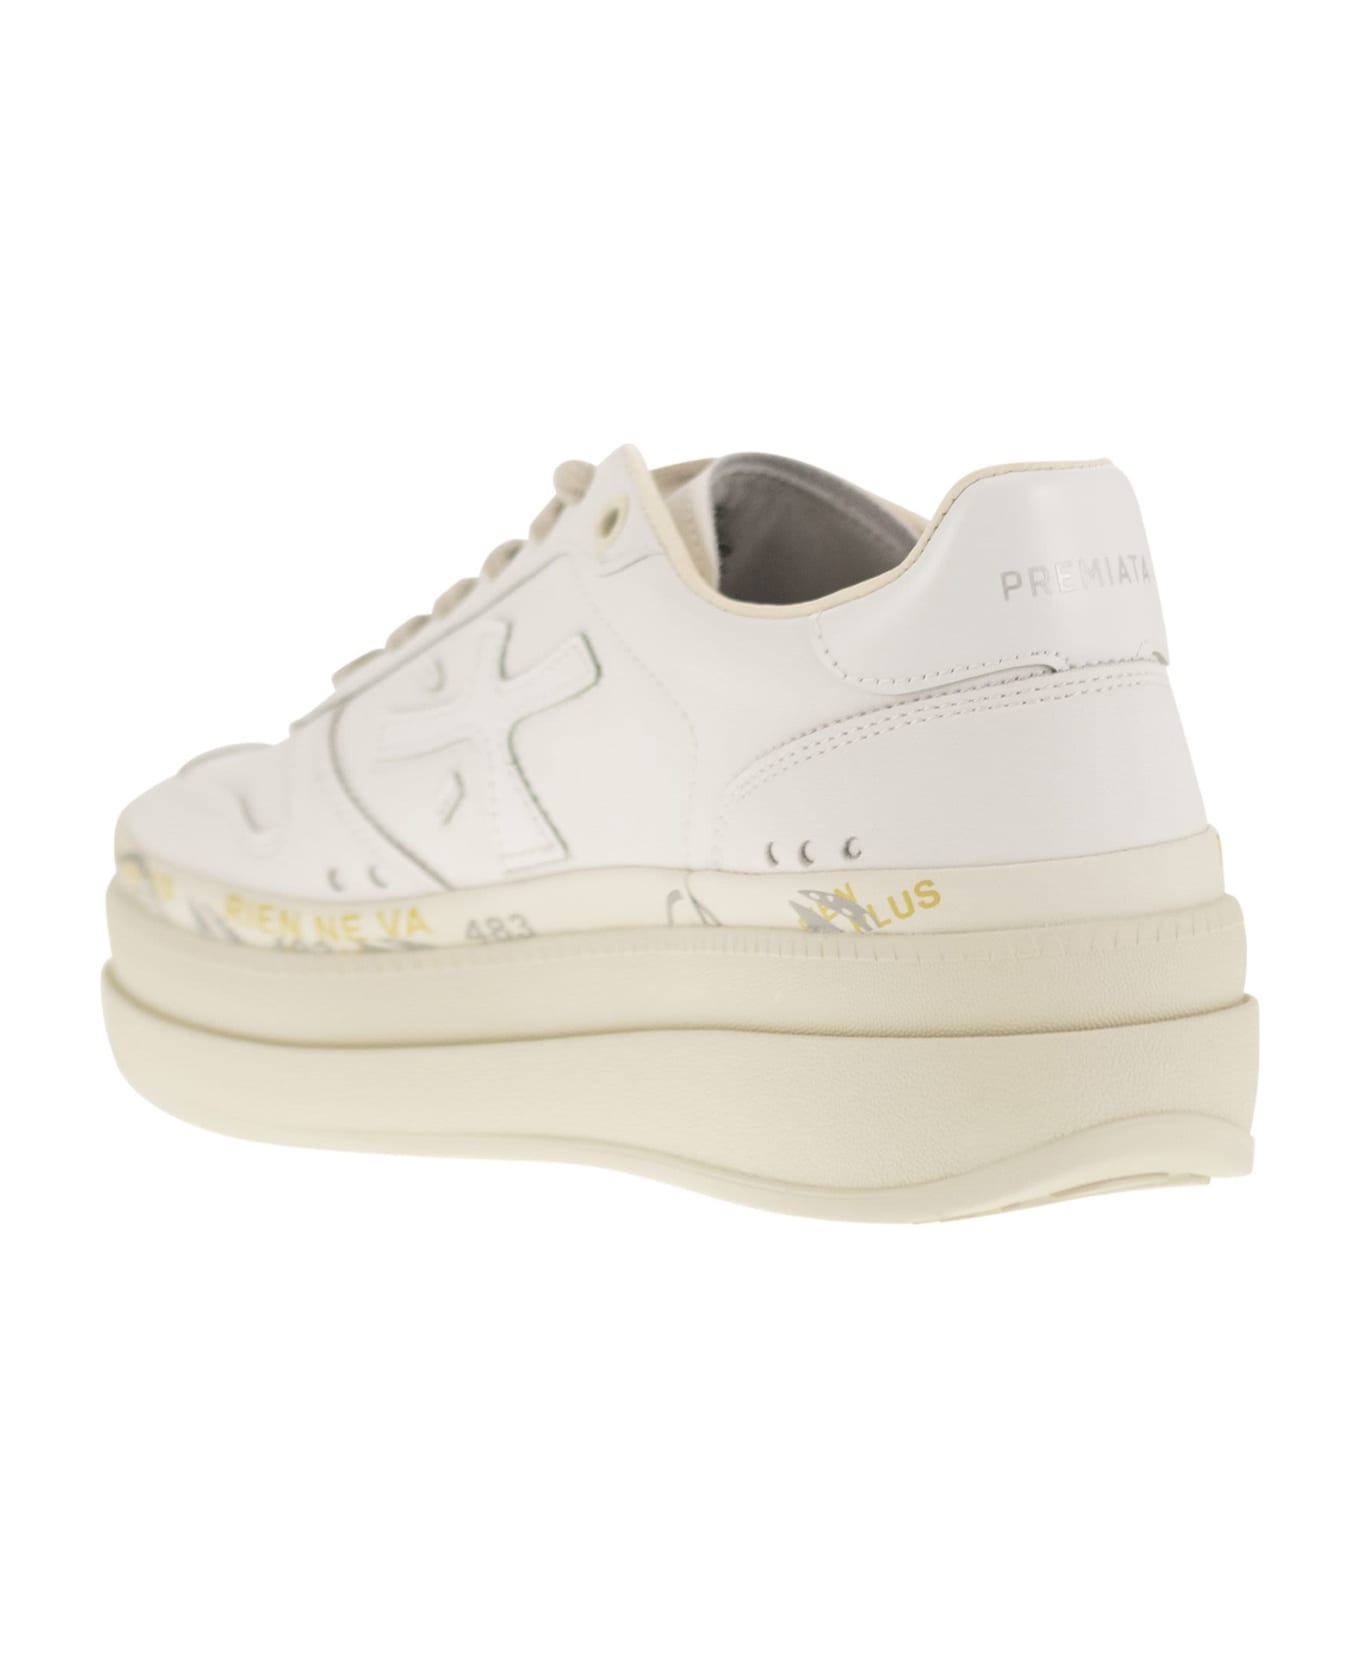 Premiata Micol Leather Sneakers - White